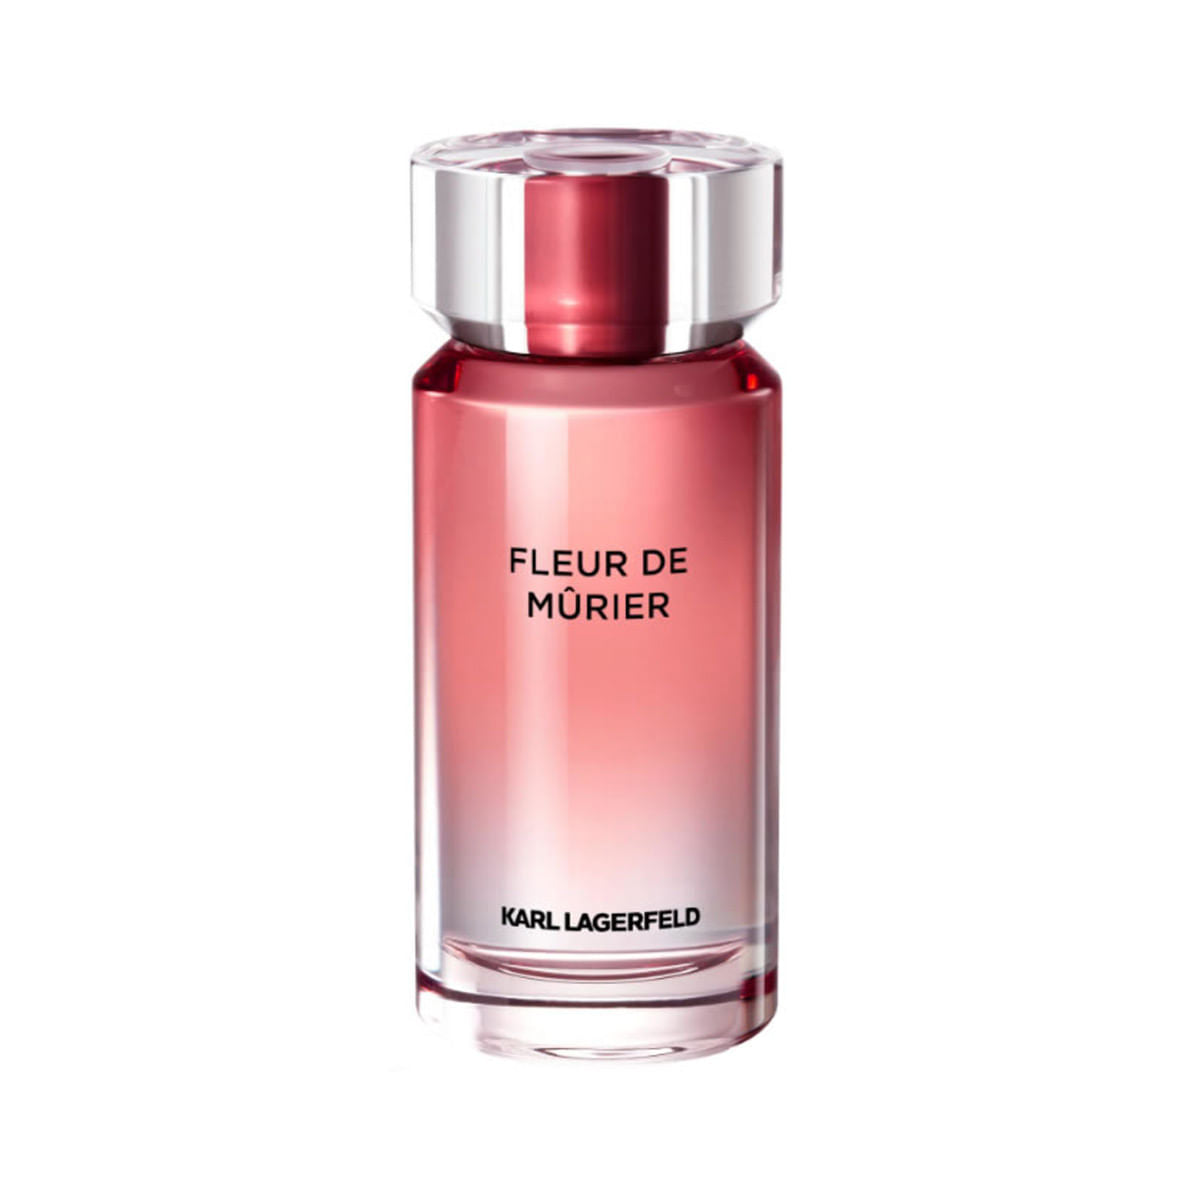 Karl Lagerfeld Fleur De Mûrier Eau de Parfum